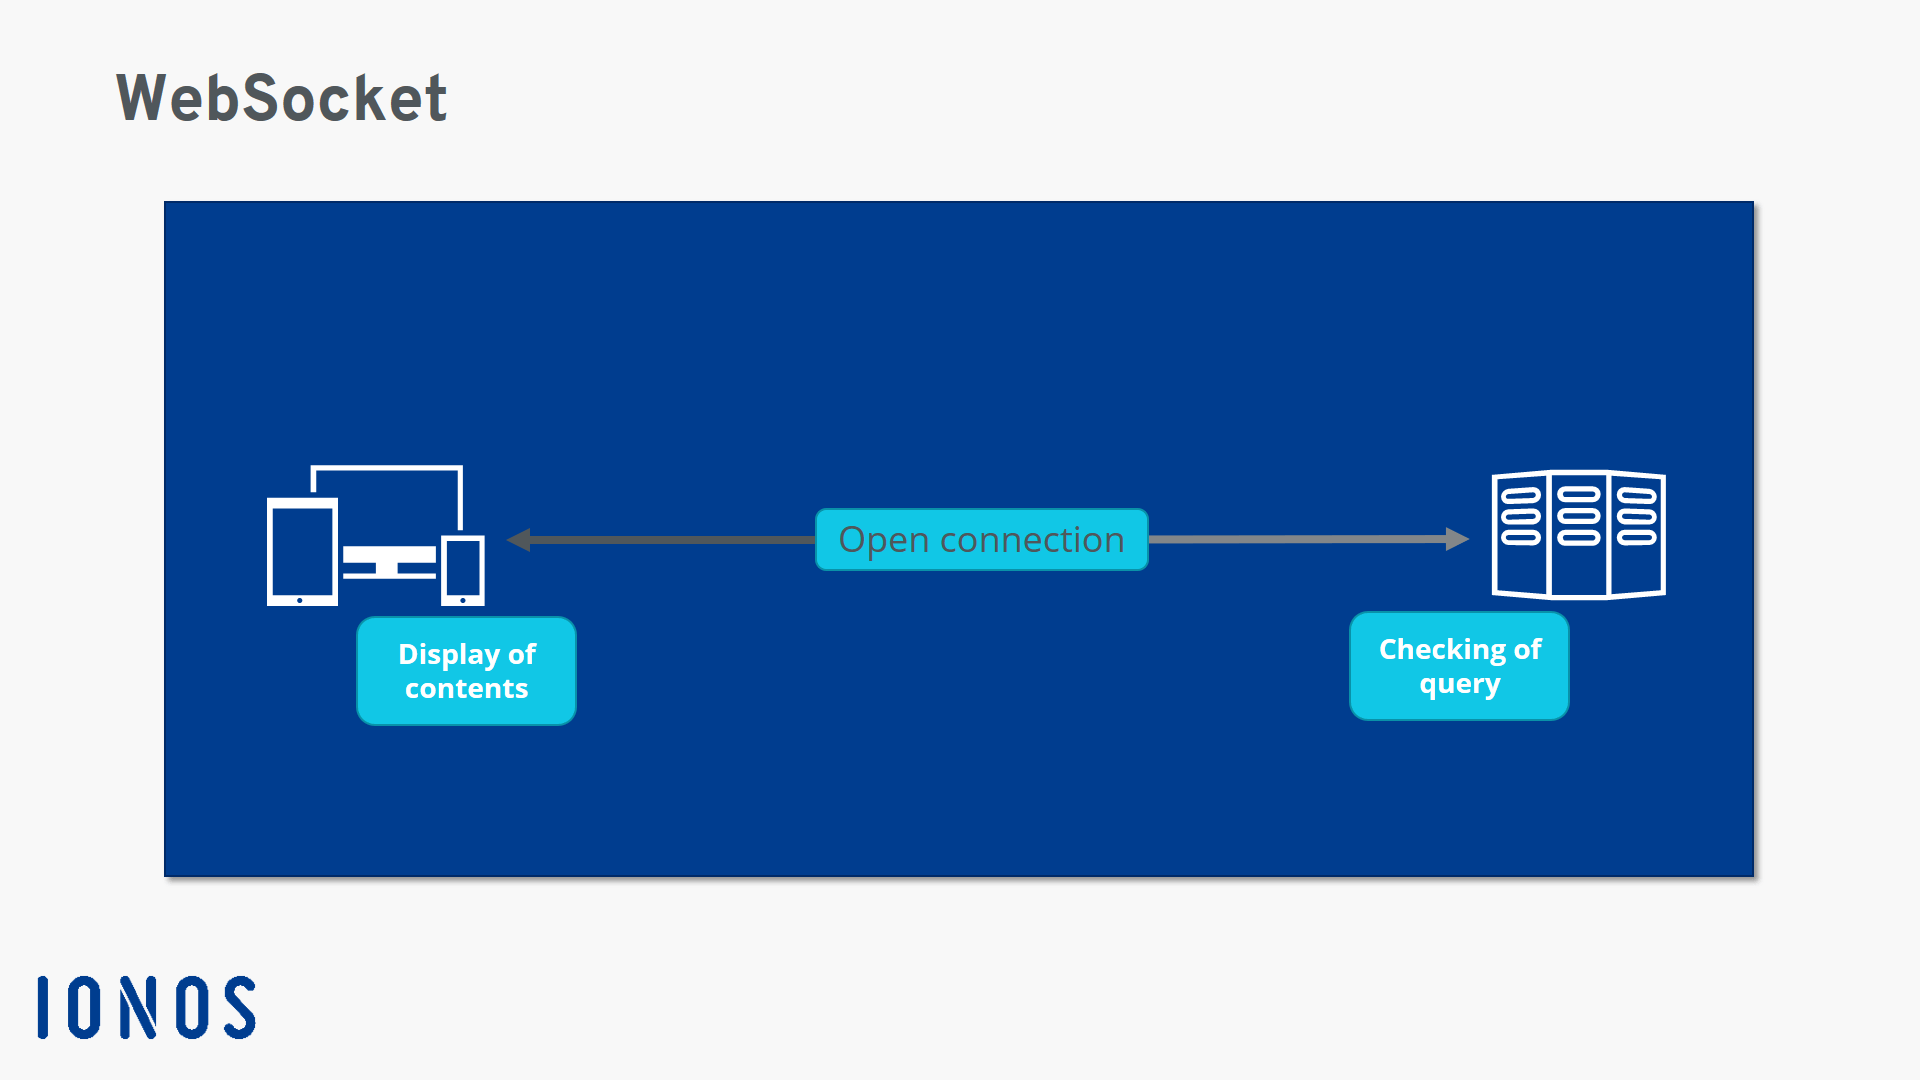 Rappresentazione schematica del funzionamento di WebSocket